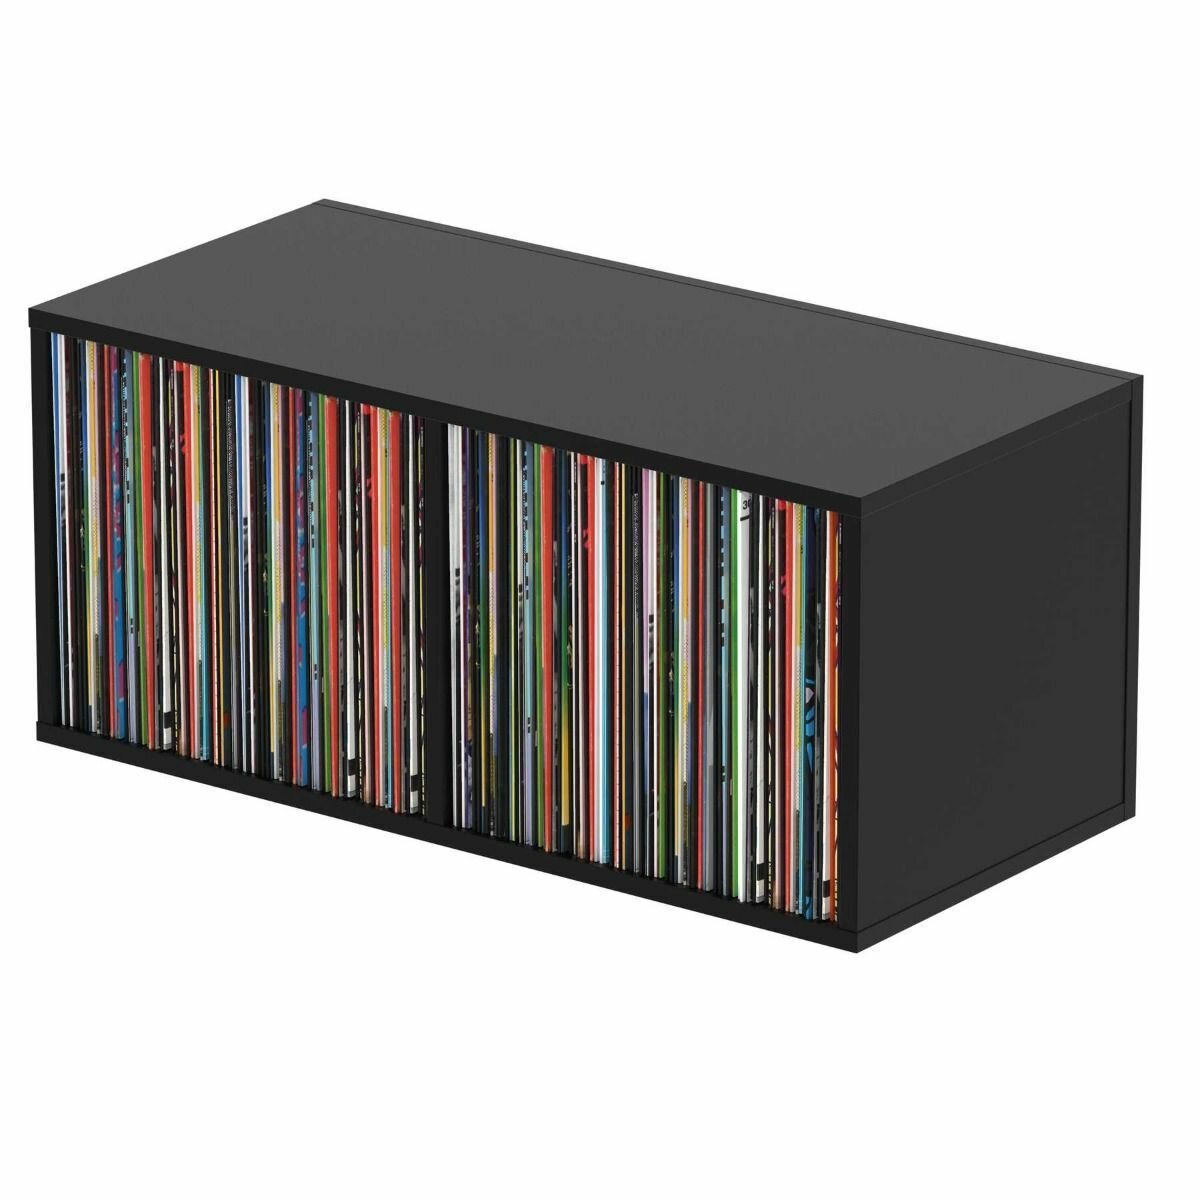 Glorious Record Box Black 230 подставка система хранения виниловых пластинок 230 шт. Цвет чёрный